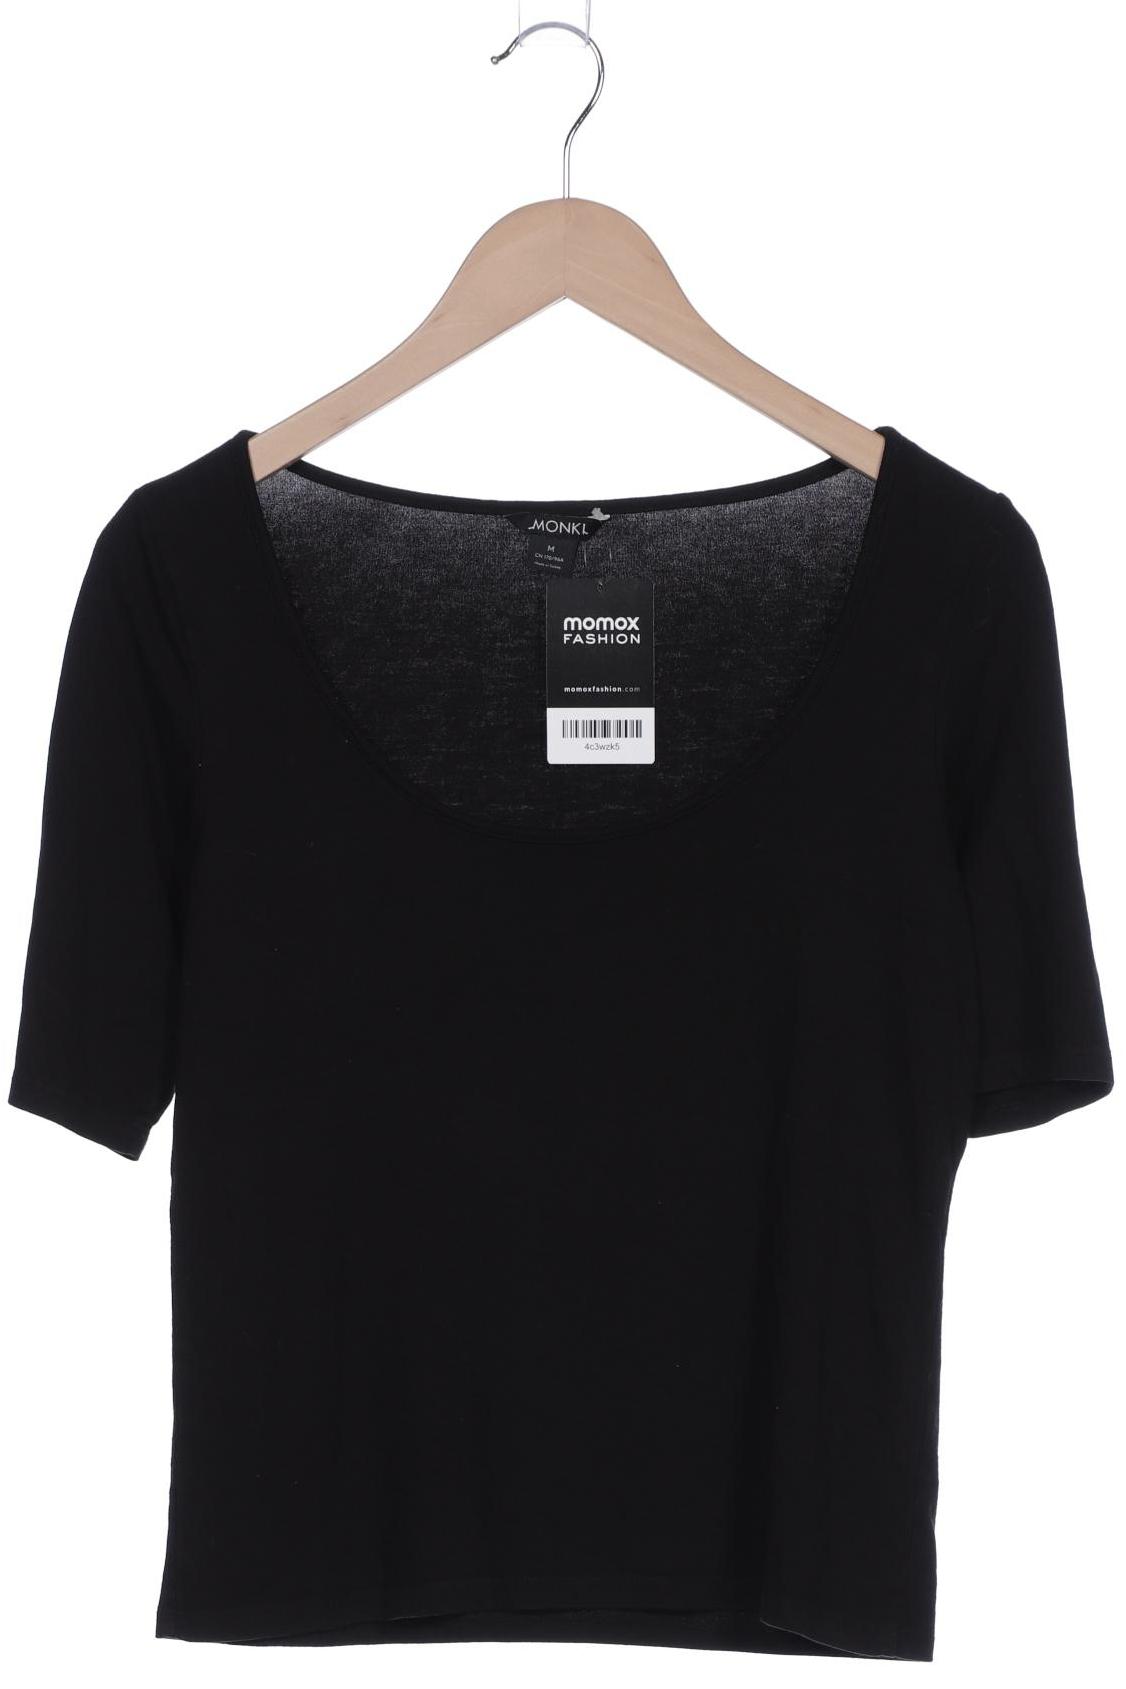 Monki Damen T-Shirt, schwarz, Gr. 38 von Monki